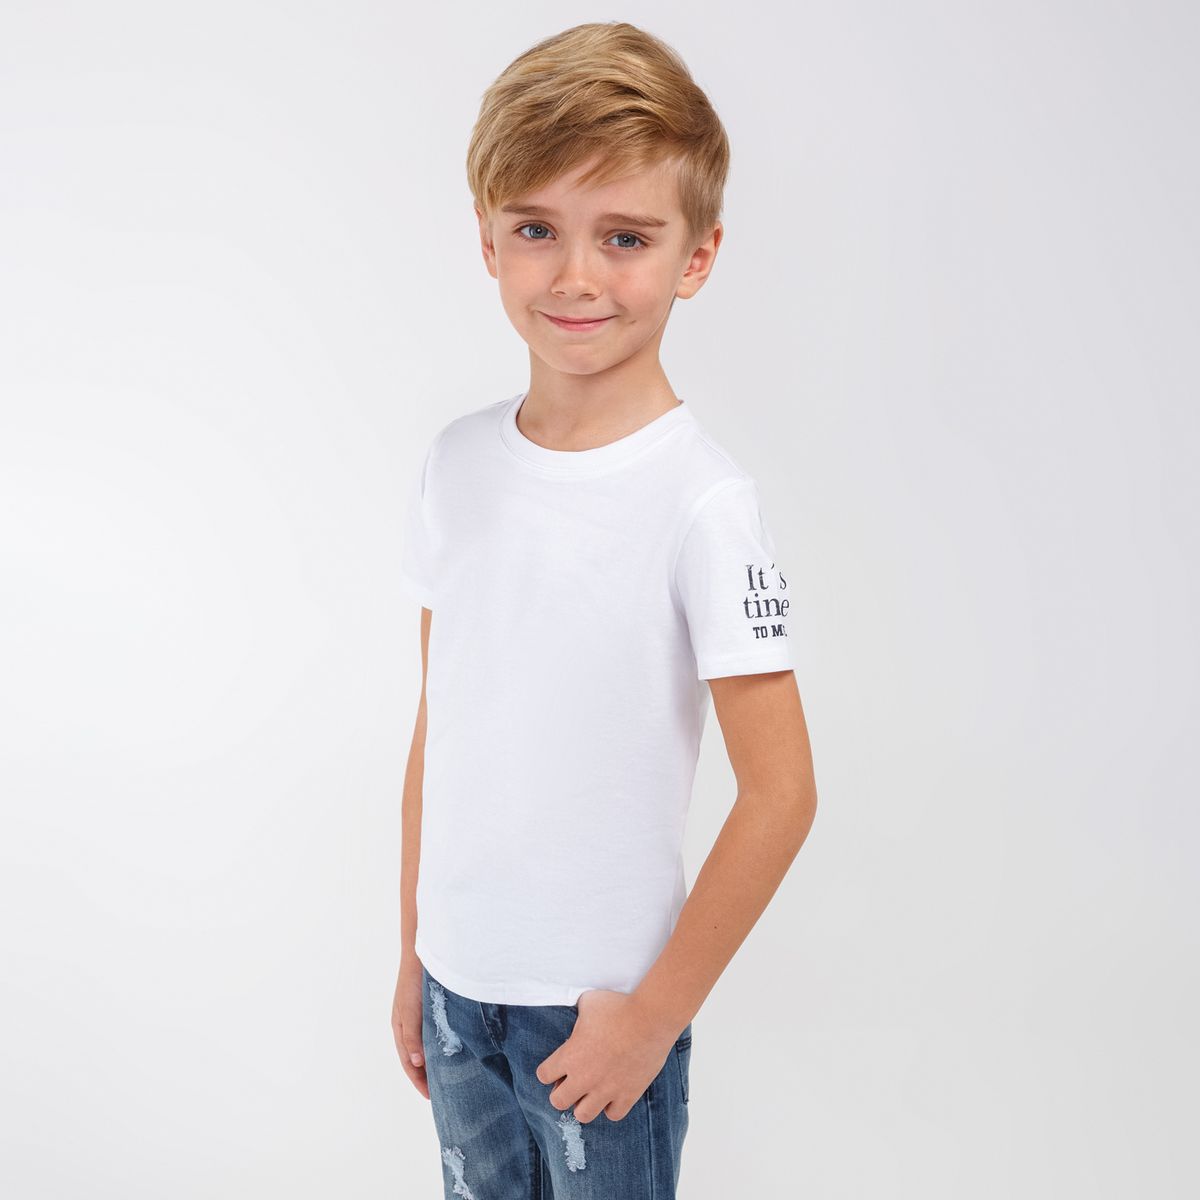 Мальчик в белой футболке боком